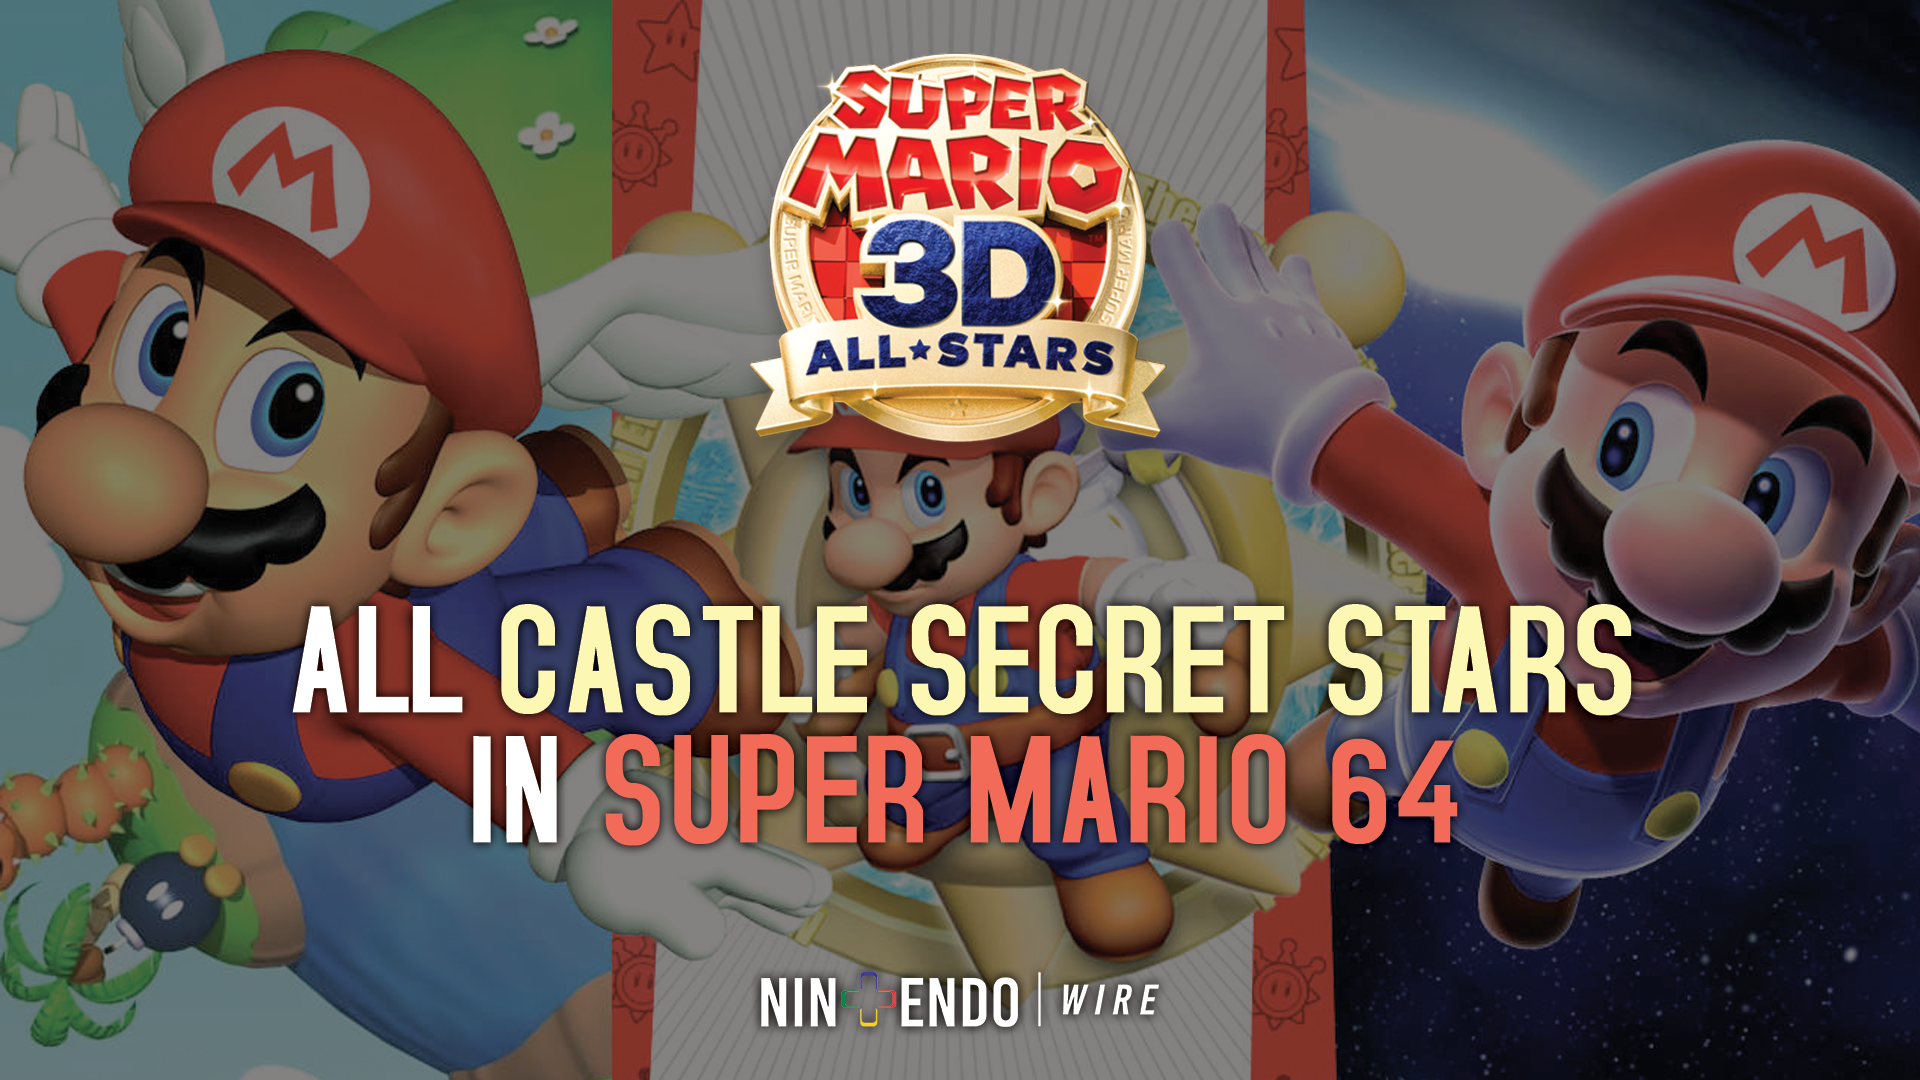 All castle secret stars